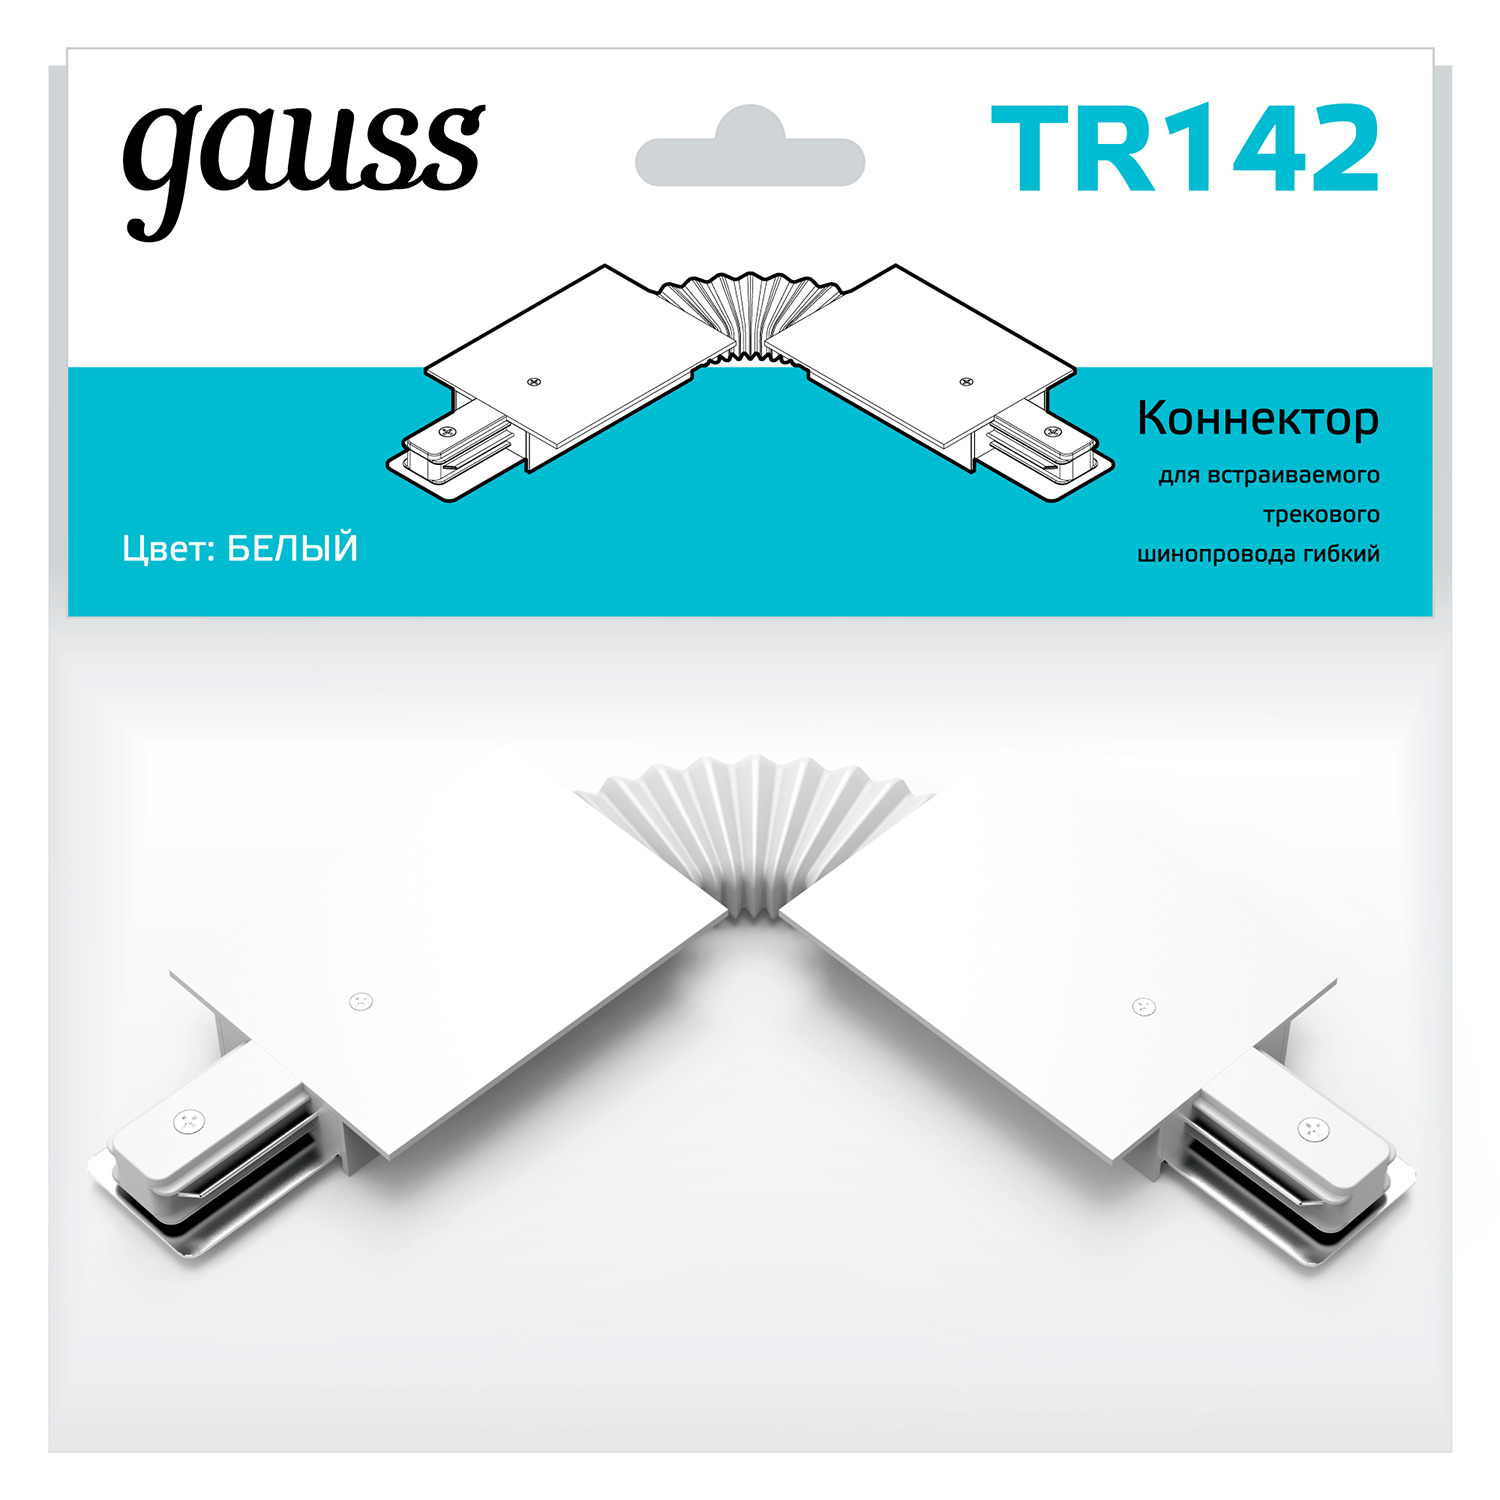 Коннектор Gauss для встраиваемых трековых шинопроводов гибкий (I) белый коннектор gauss для трековых шинопроводов гибкий i